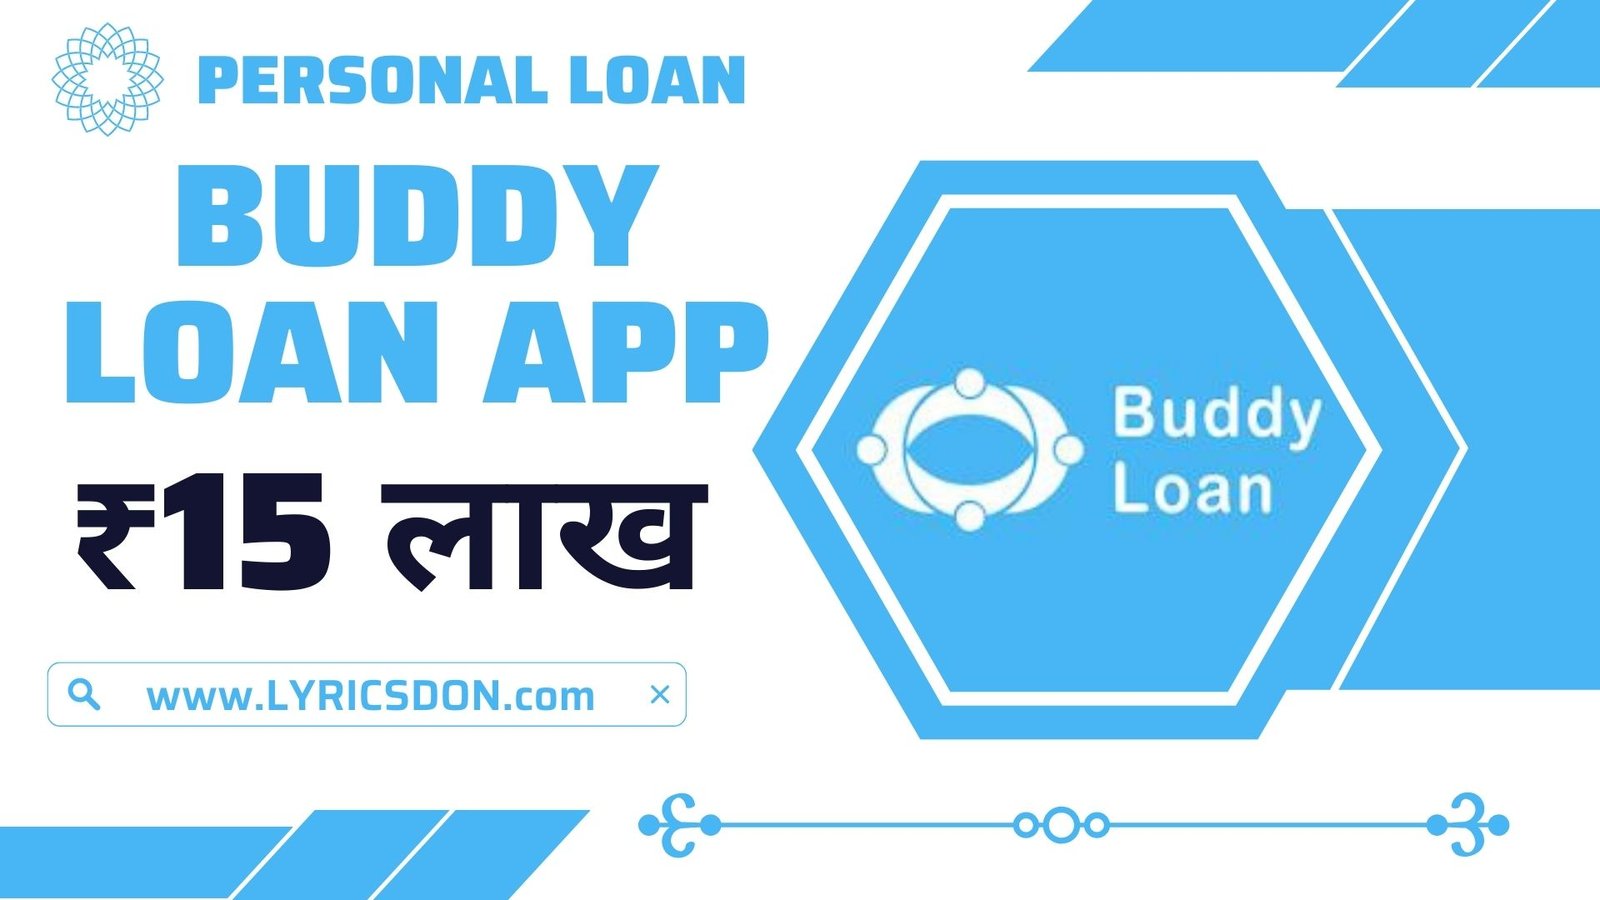 Buddy Loan App Loan Amount